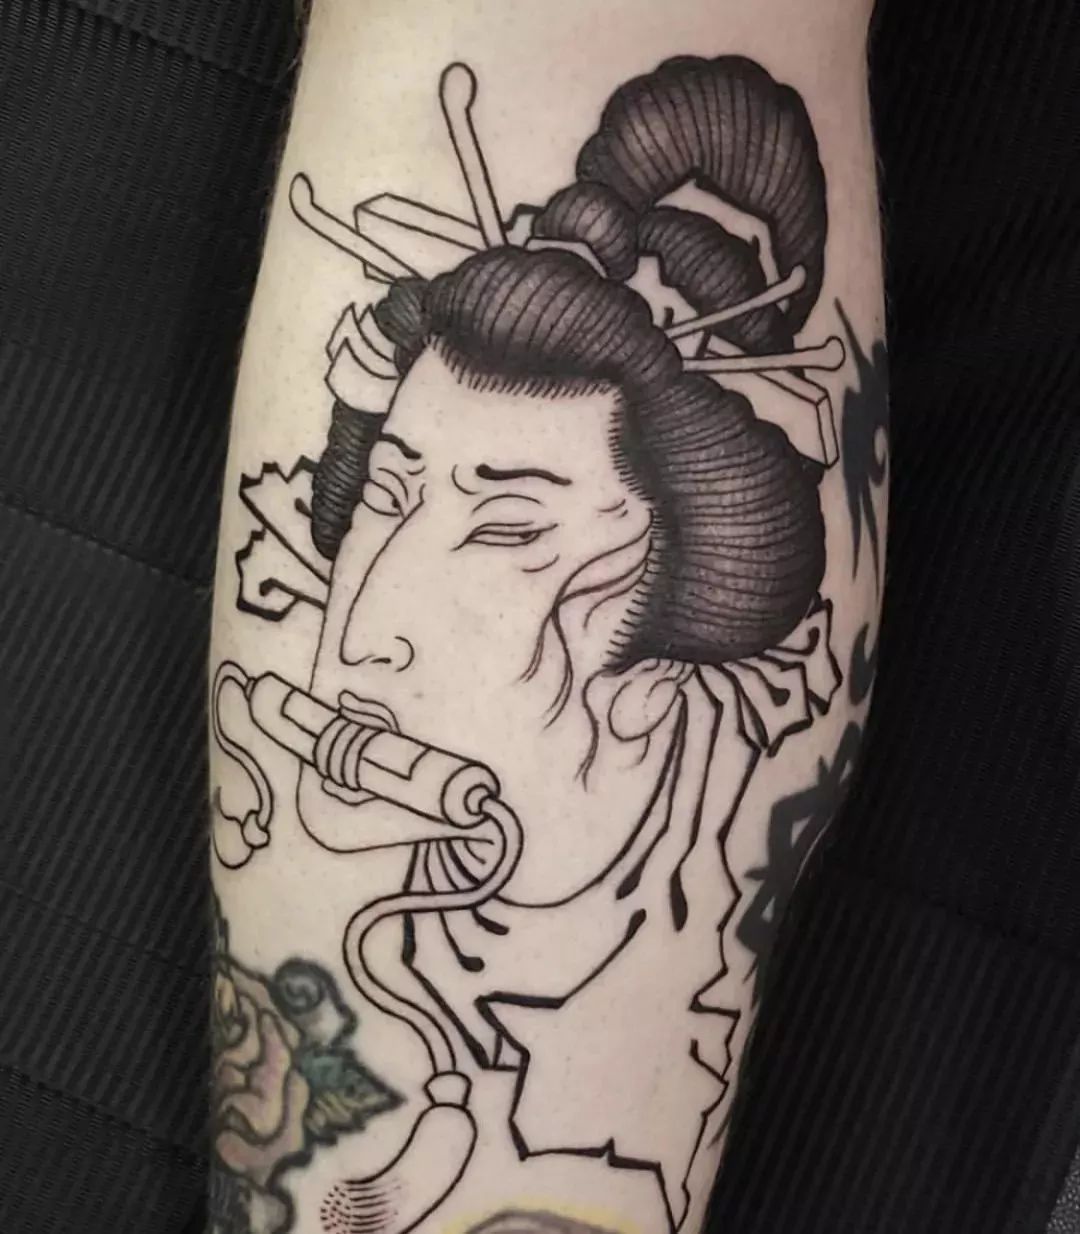 聊一聊日本的纹身文化